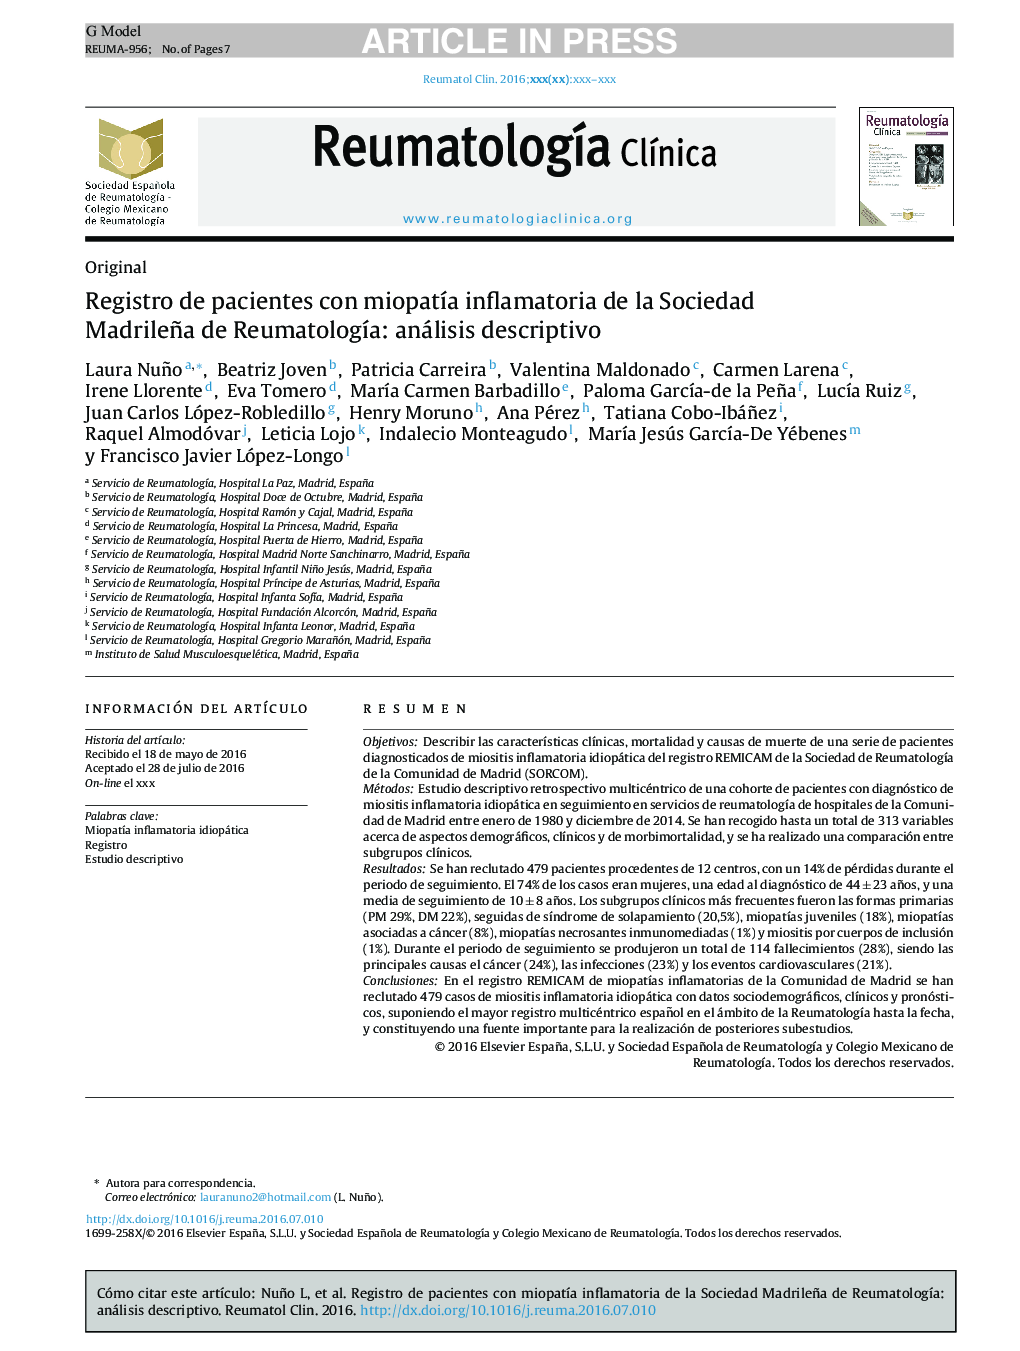 Registro de pacientes con miopatÃ­a inflamatoria de la Sociedad Madrileña de ReumatologÃ­a: análisis descriptivo